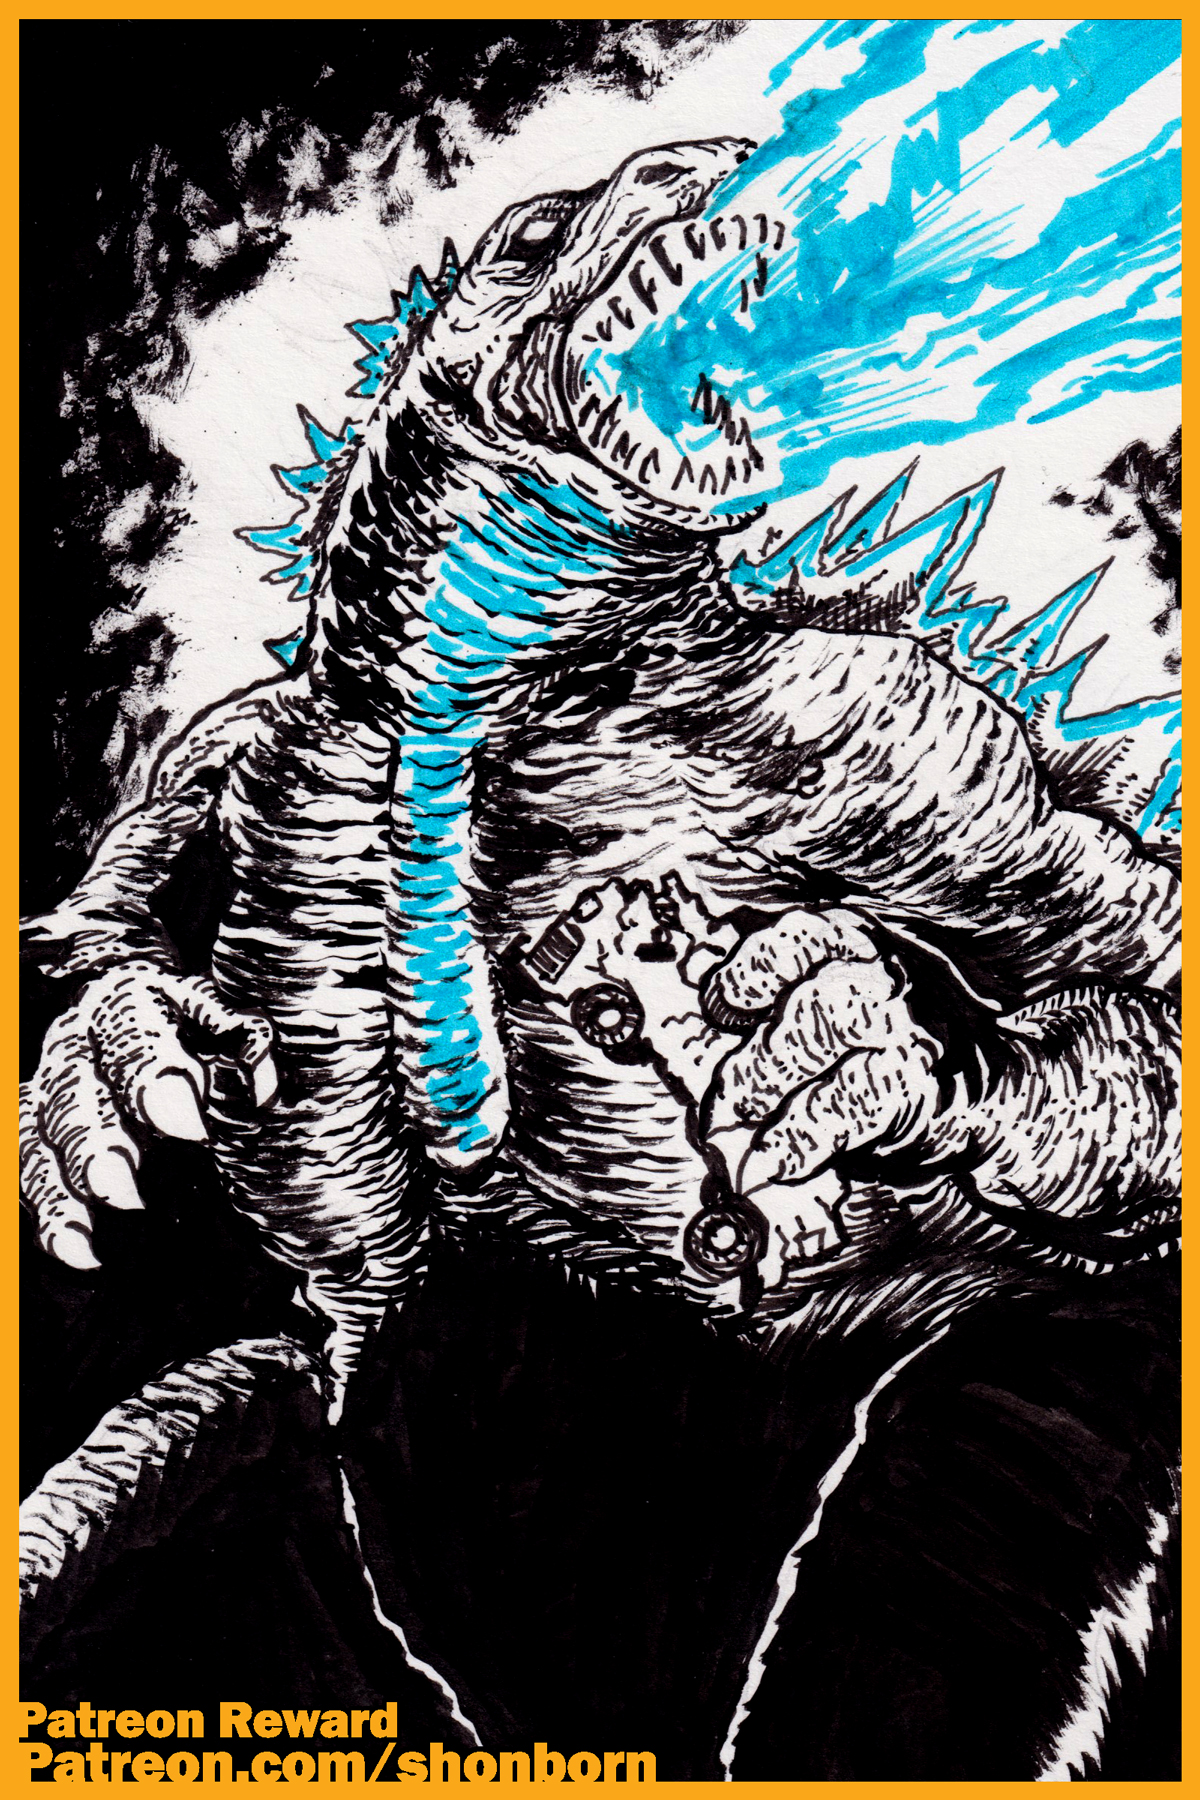 Patreon Reward: Godzilla